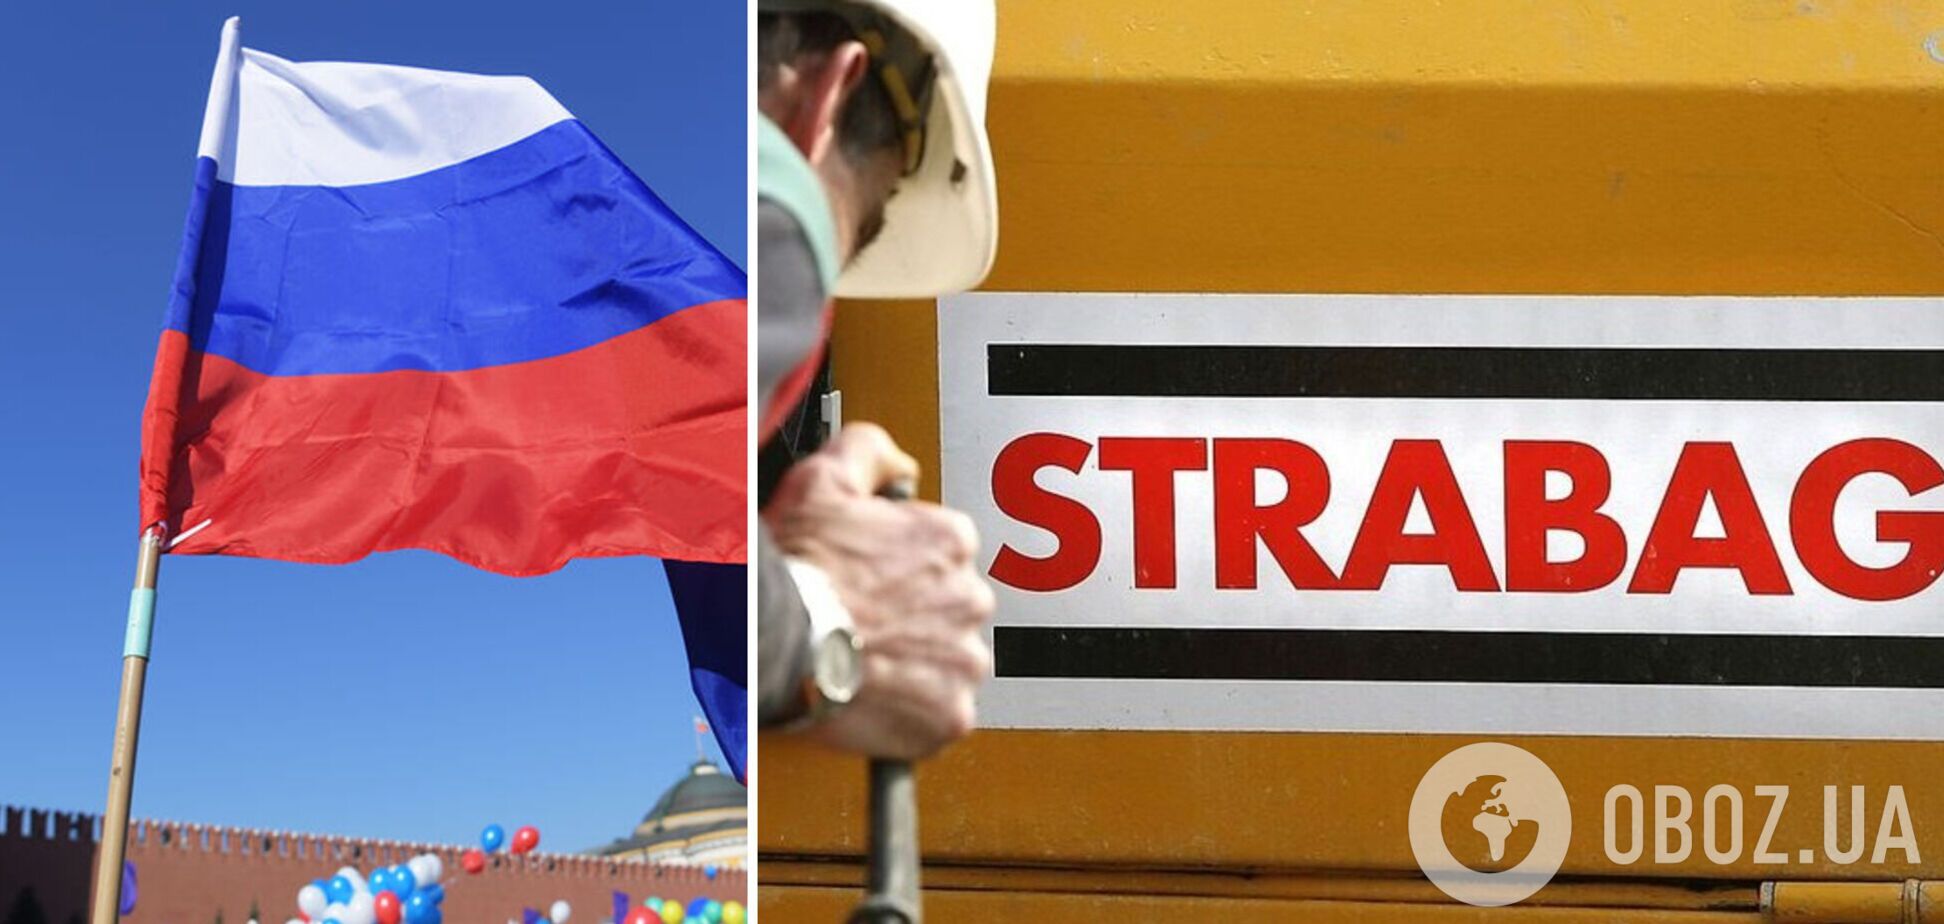 Крупная европейская компания Strabag ушла из России